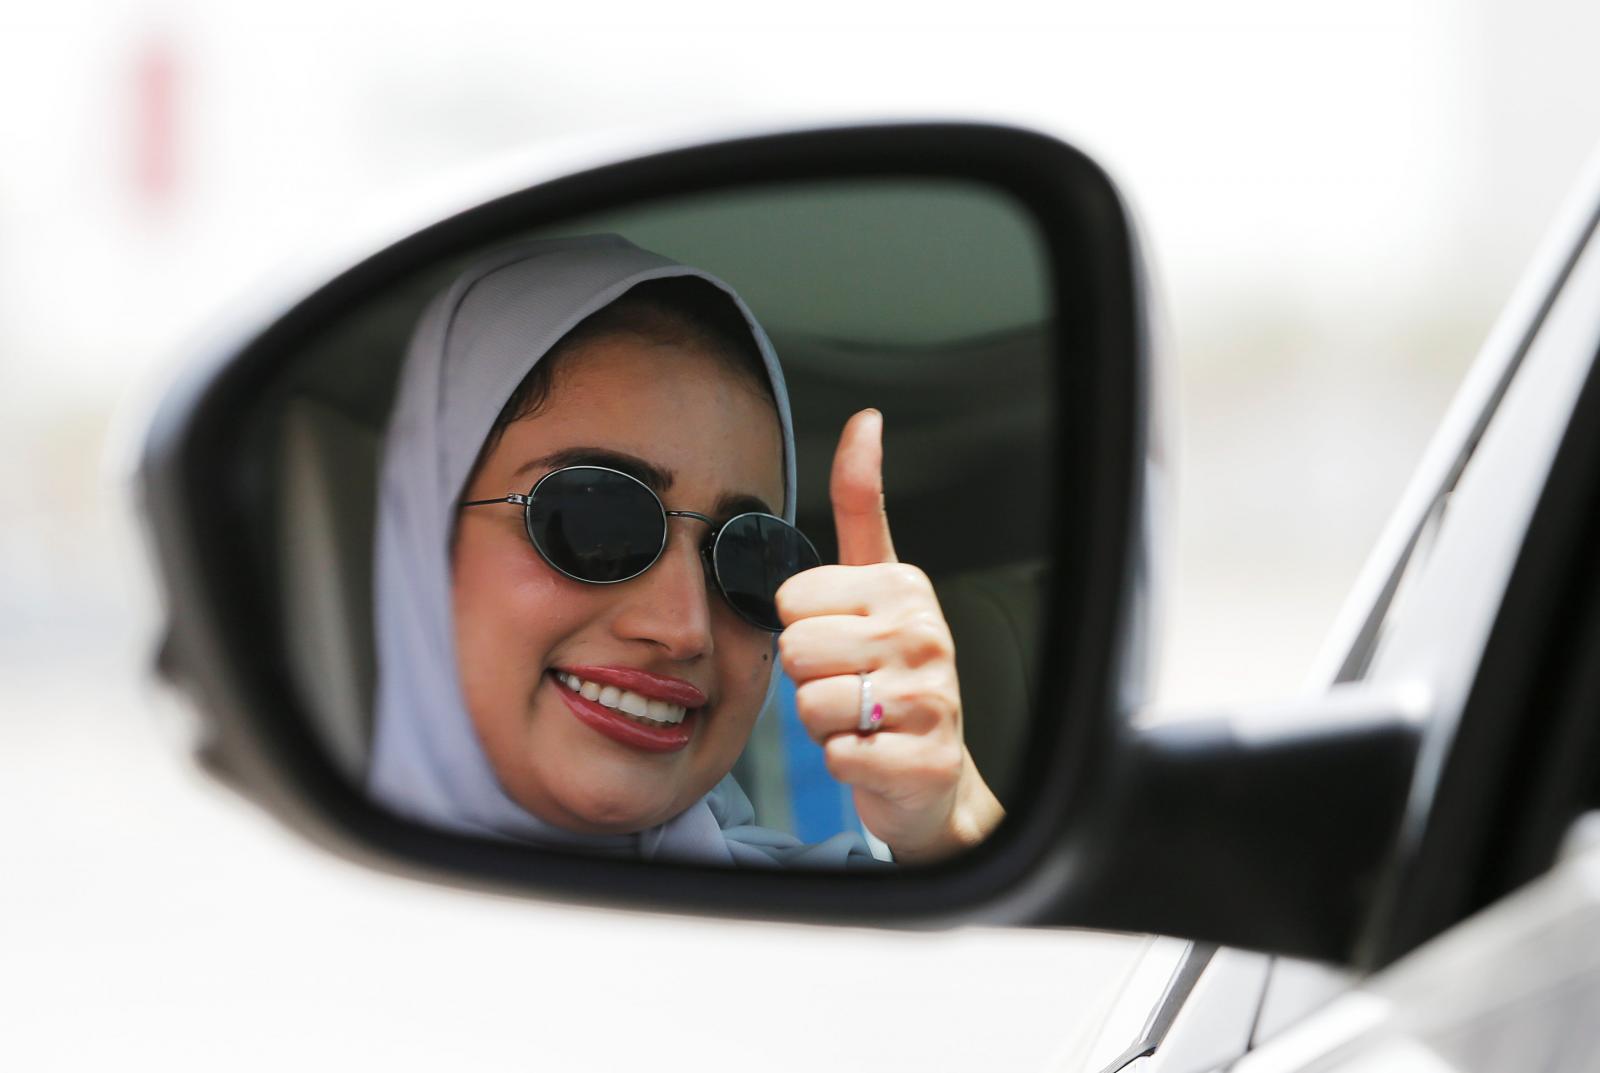 Saudi women take victory laps as driving ban ends